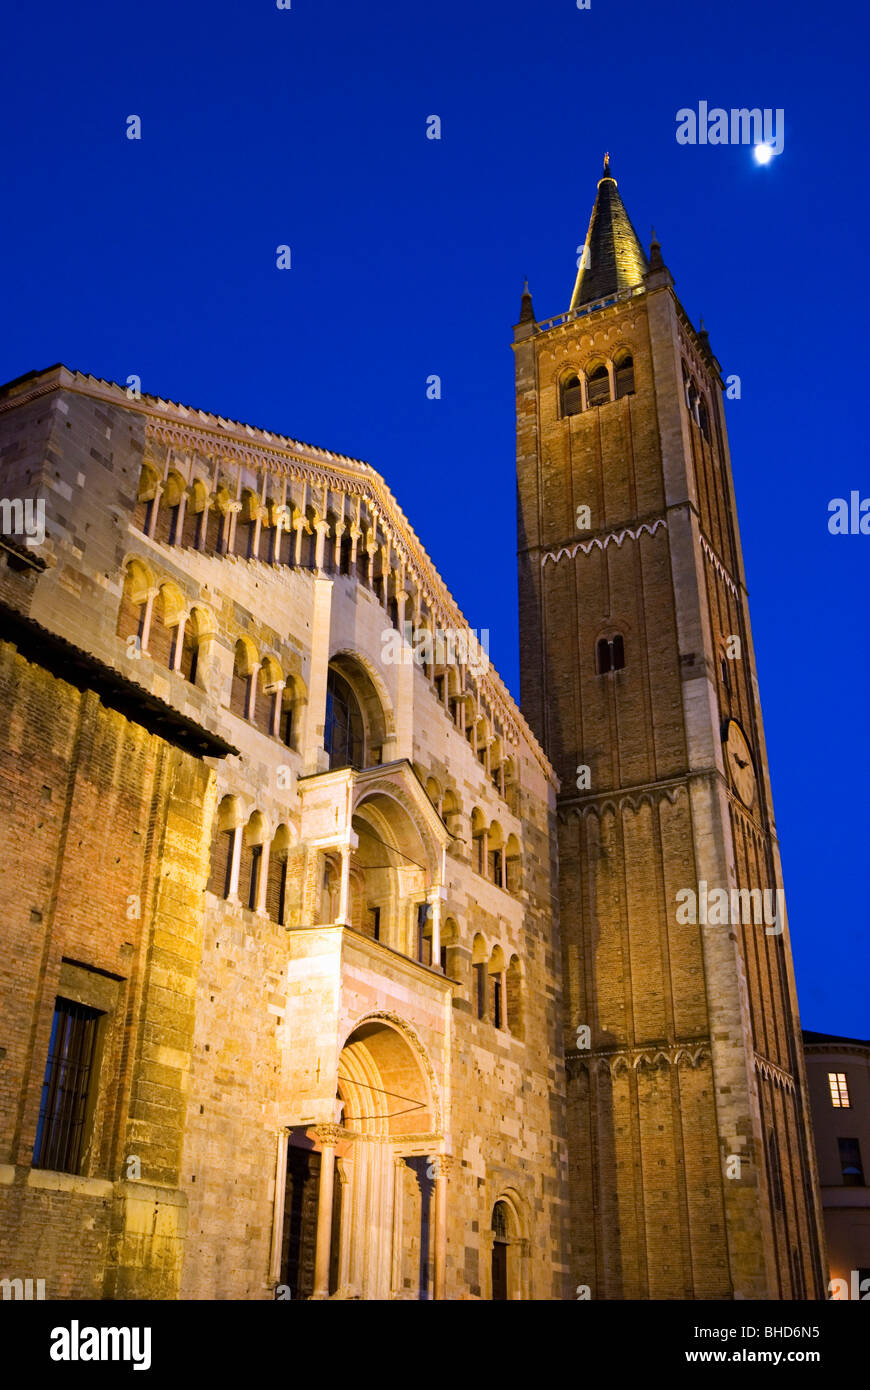 The Duomo, Parma, Emilia Romagna, Italy, Europe Stock Photo